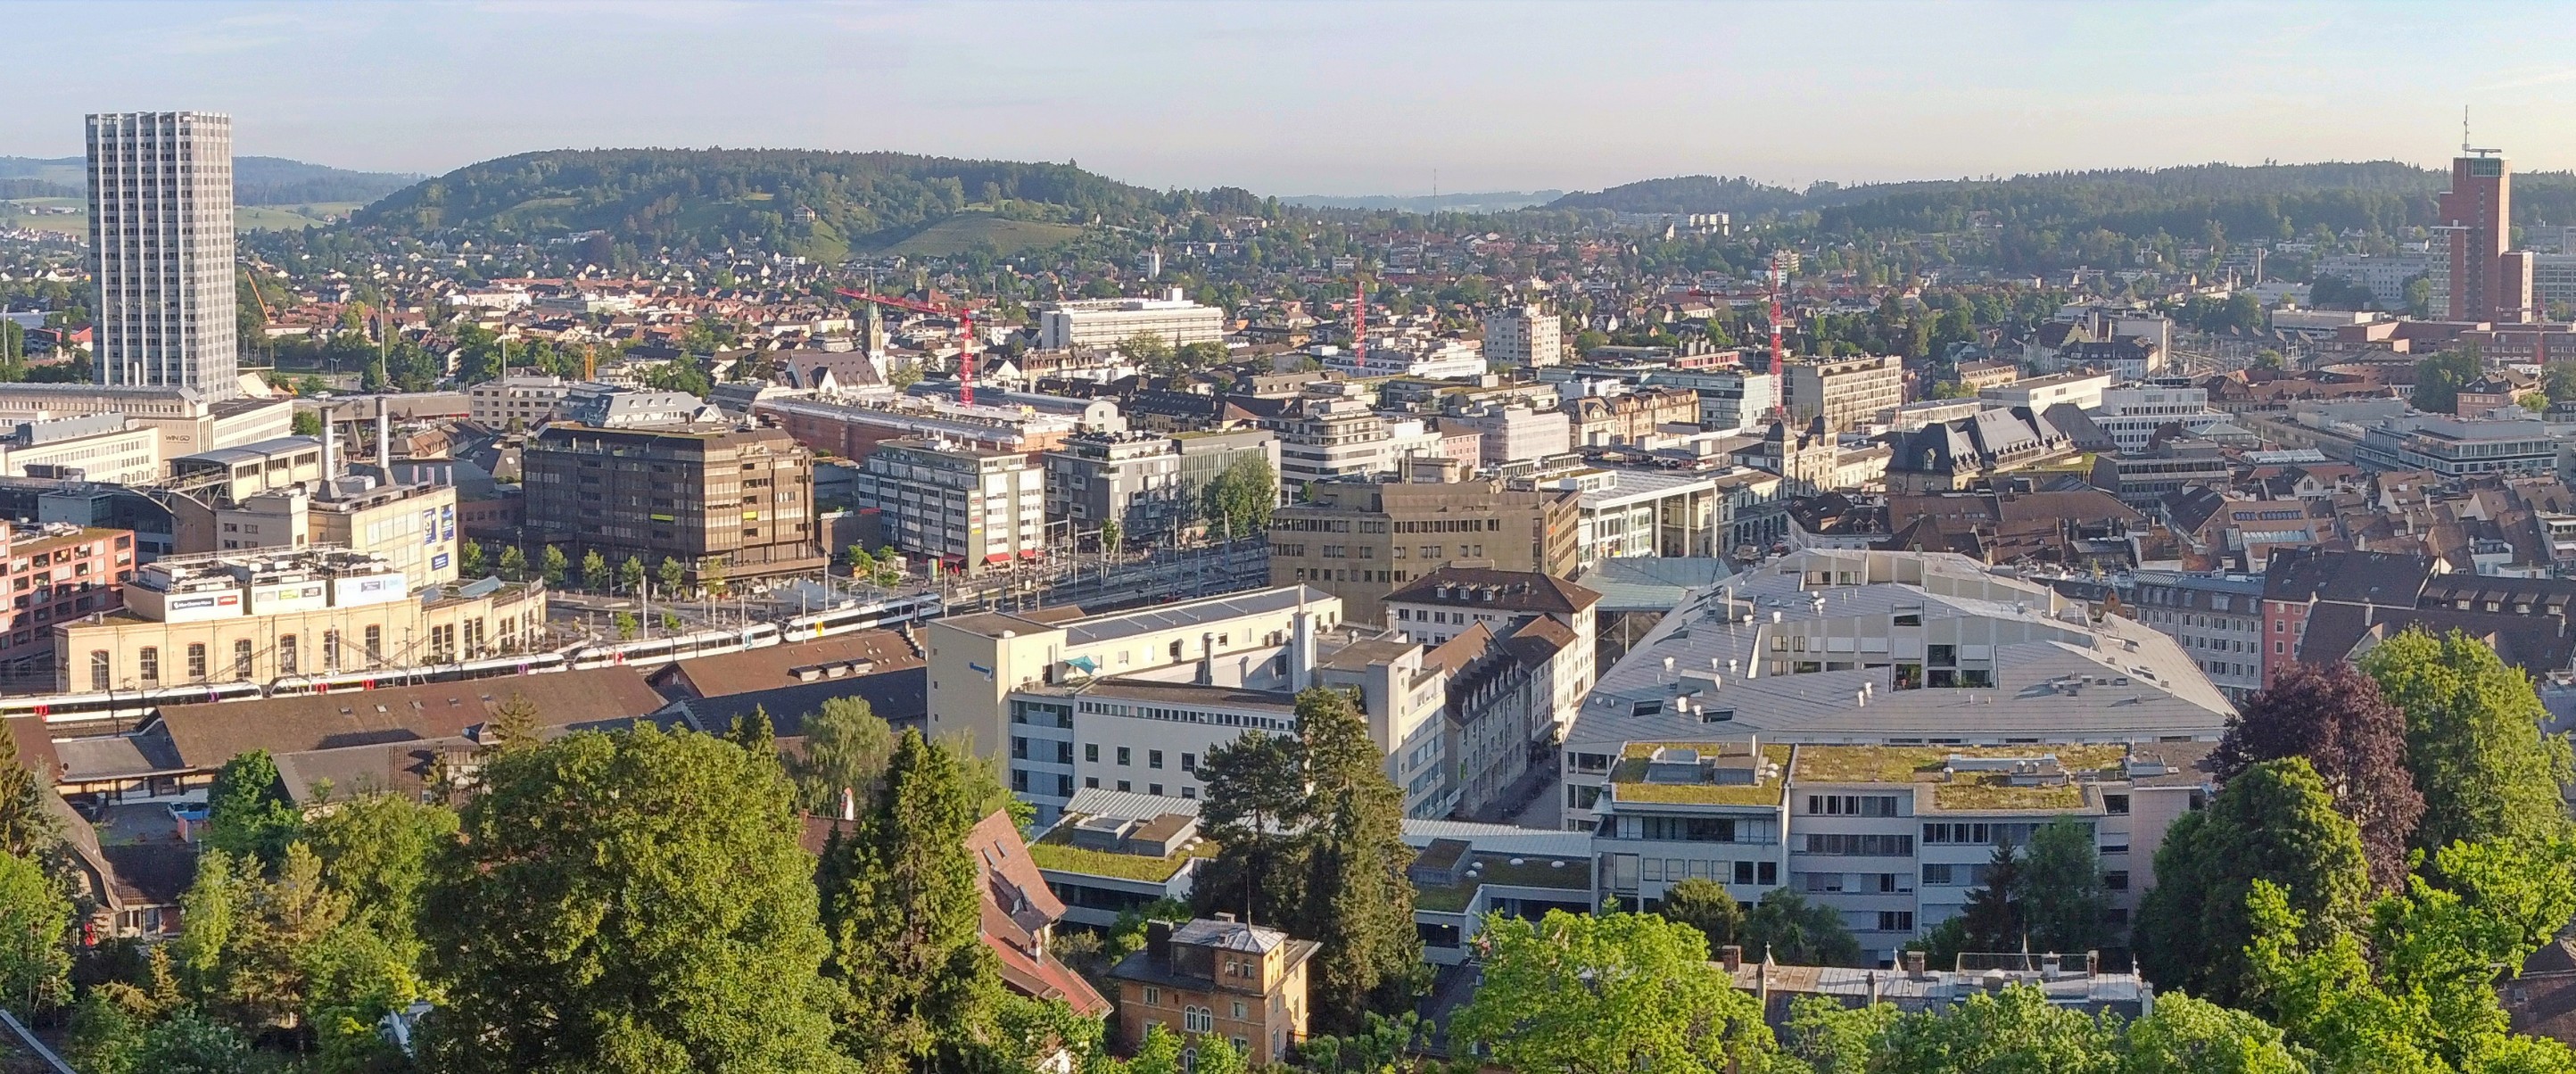 Der Standort von Vontobel in der Stadt Winterthur - Panorama über die Stadt Winterthur